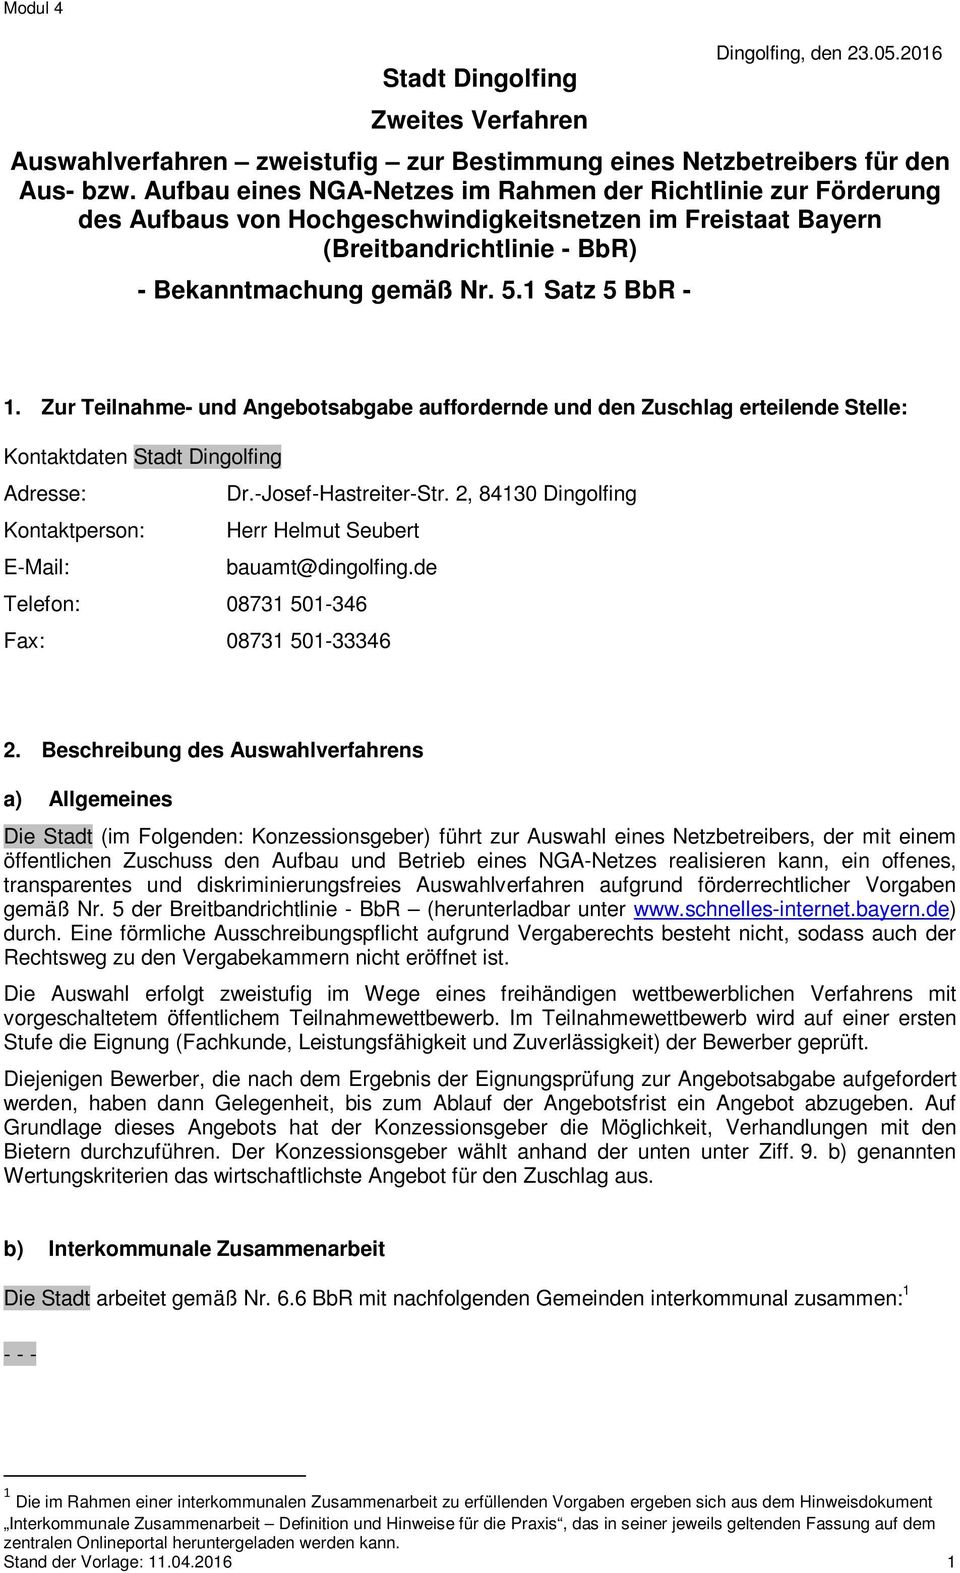 Zur Teilnahme- und Angebotsabgabe auffordernde und den Zuschlag erteilende Stelle: Kontaktdaten Stadt Dingolfing Adresse: Dr.-Josef-Hastreiter-Str.